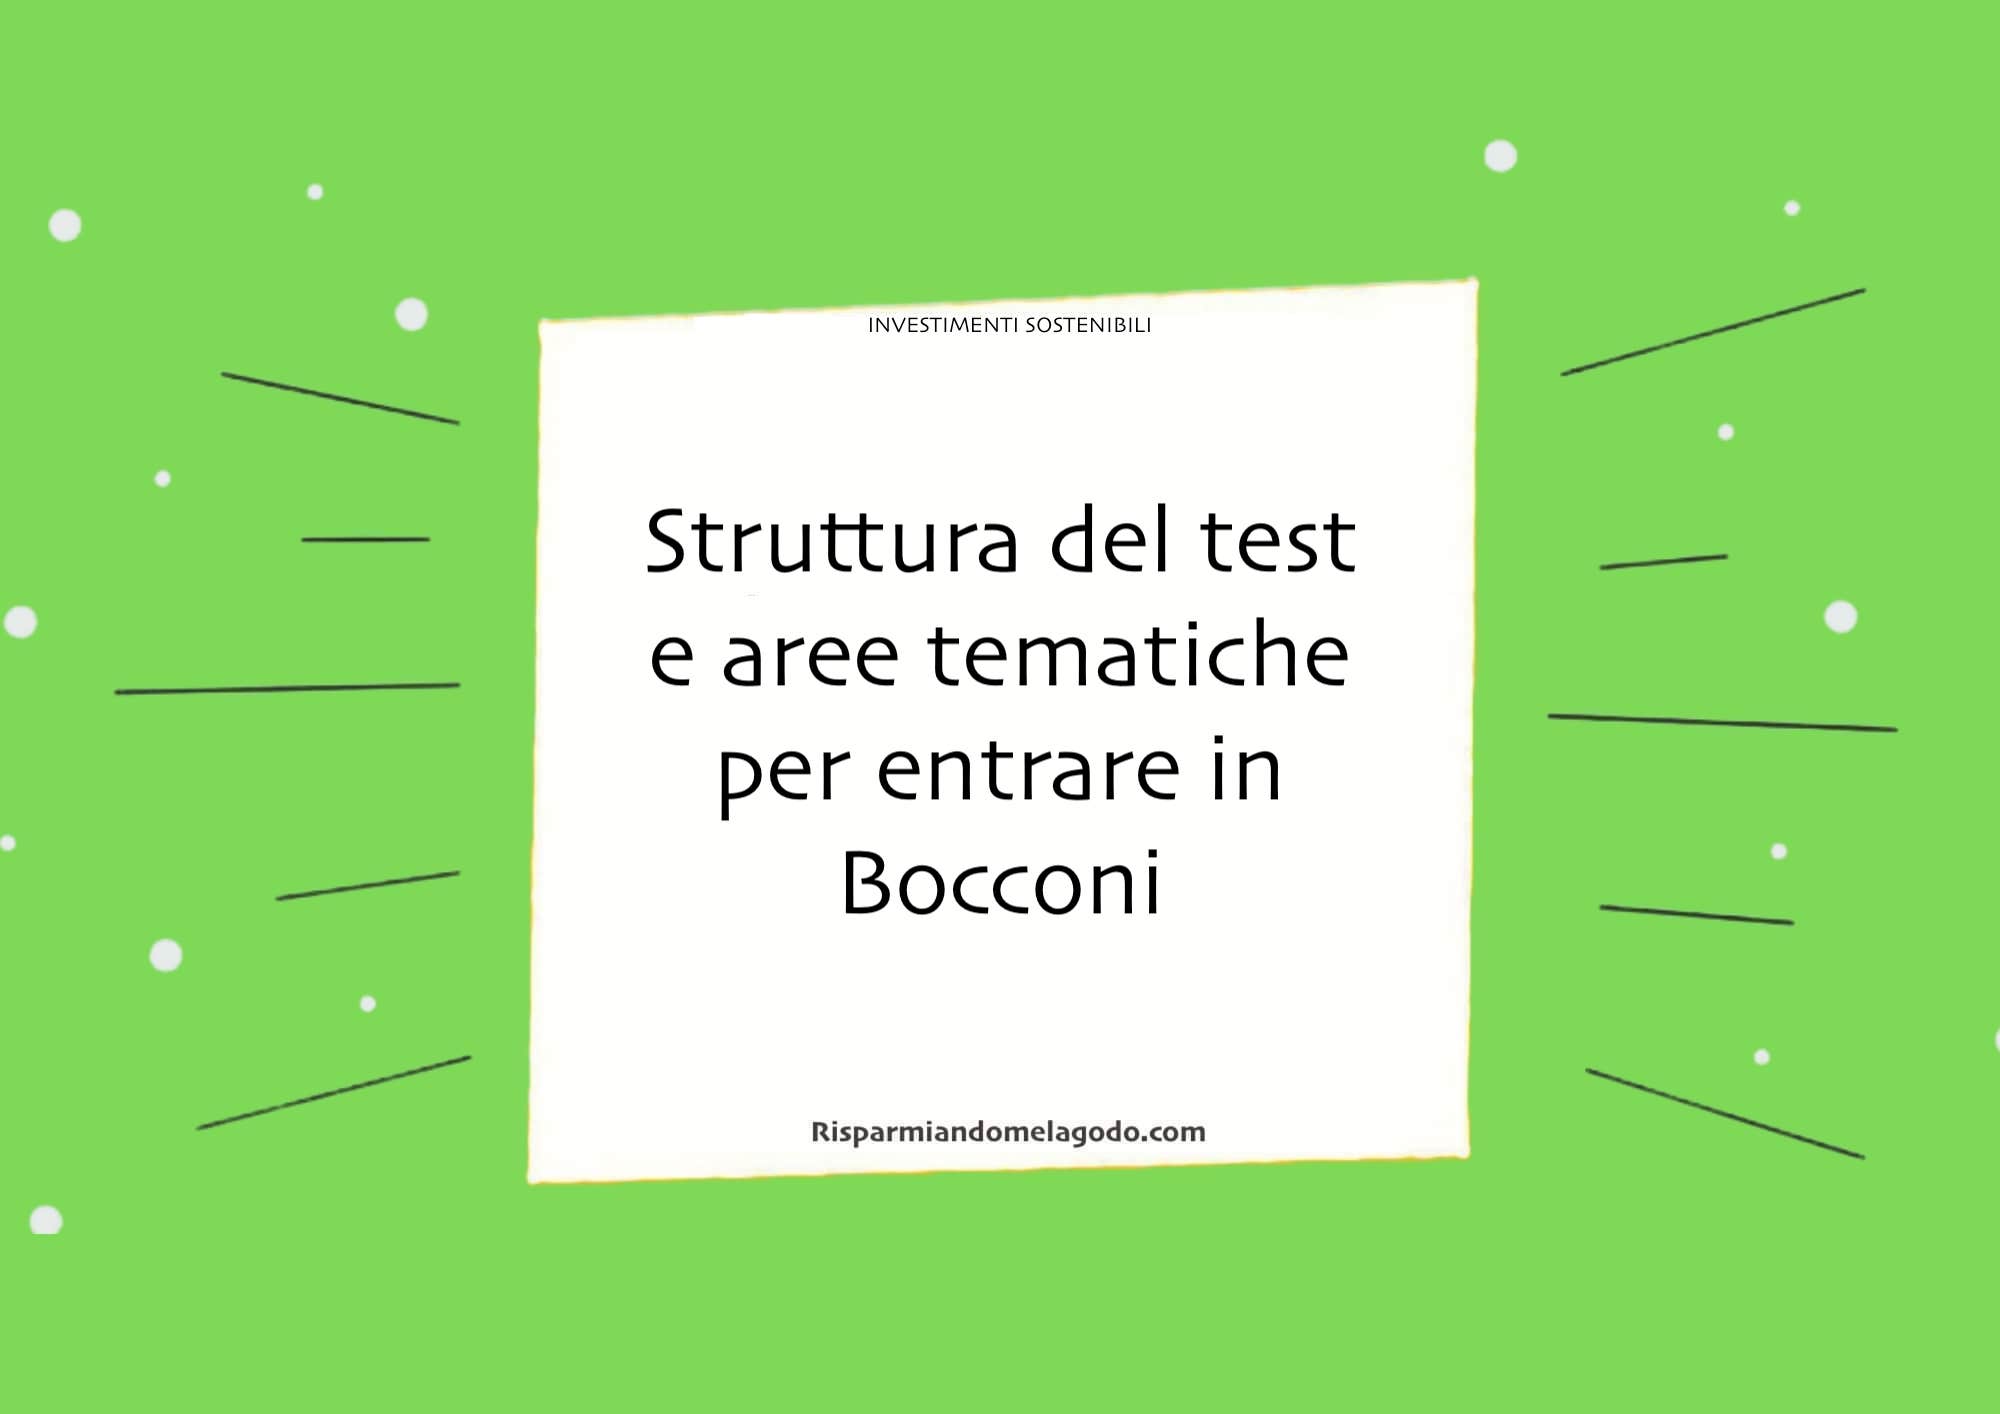 Struttura del test e aree tematiche per entrare in Bocconi